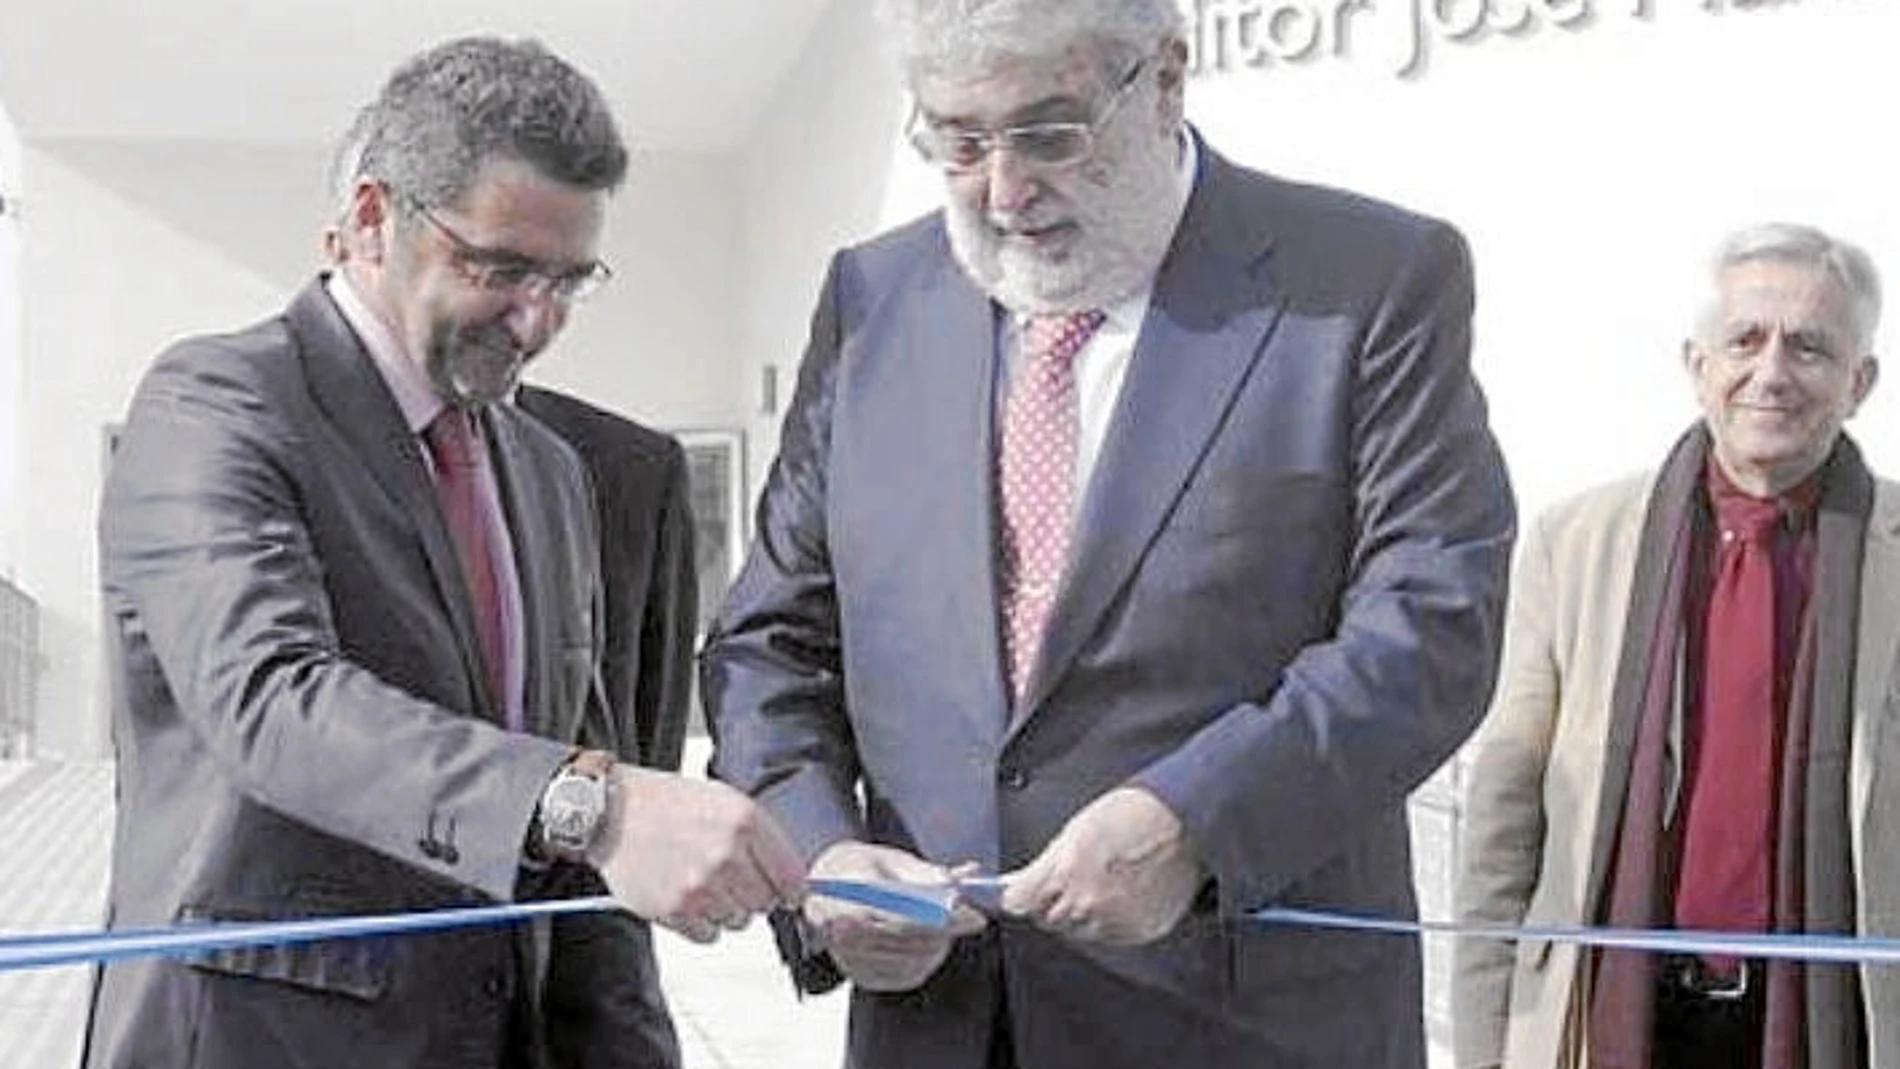 José Manuel Lara Bosch inauguró en diciembre de 2010 la biblioteca que lleva su nombre en la localidad sevillana de Alcalá de Guadaíra